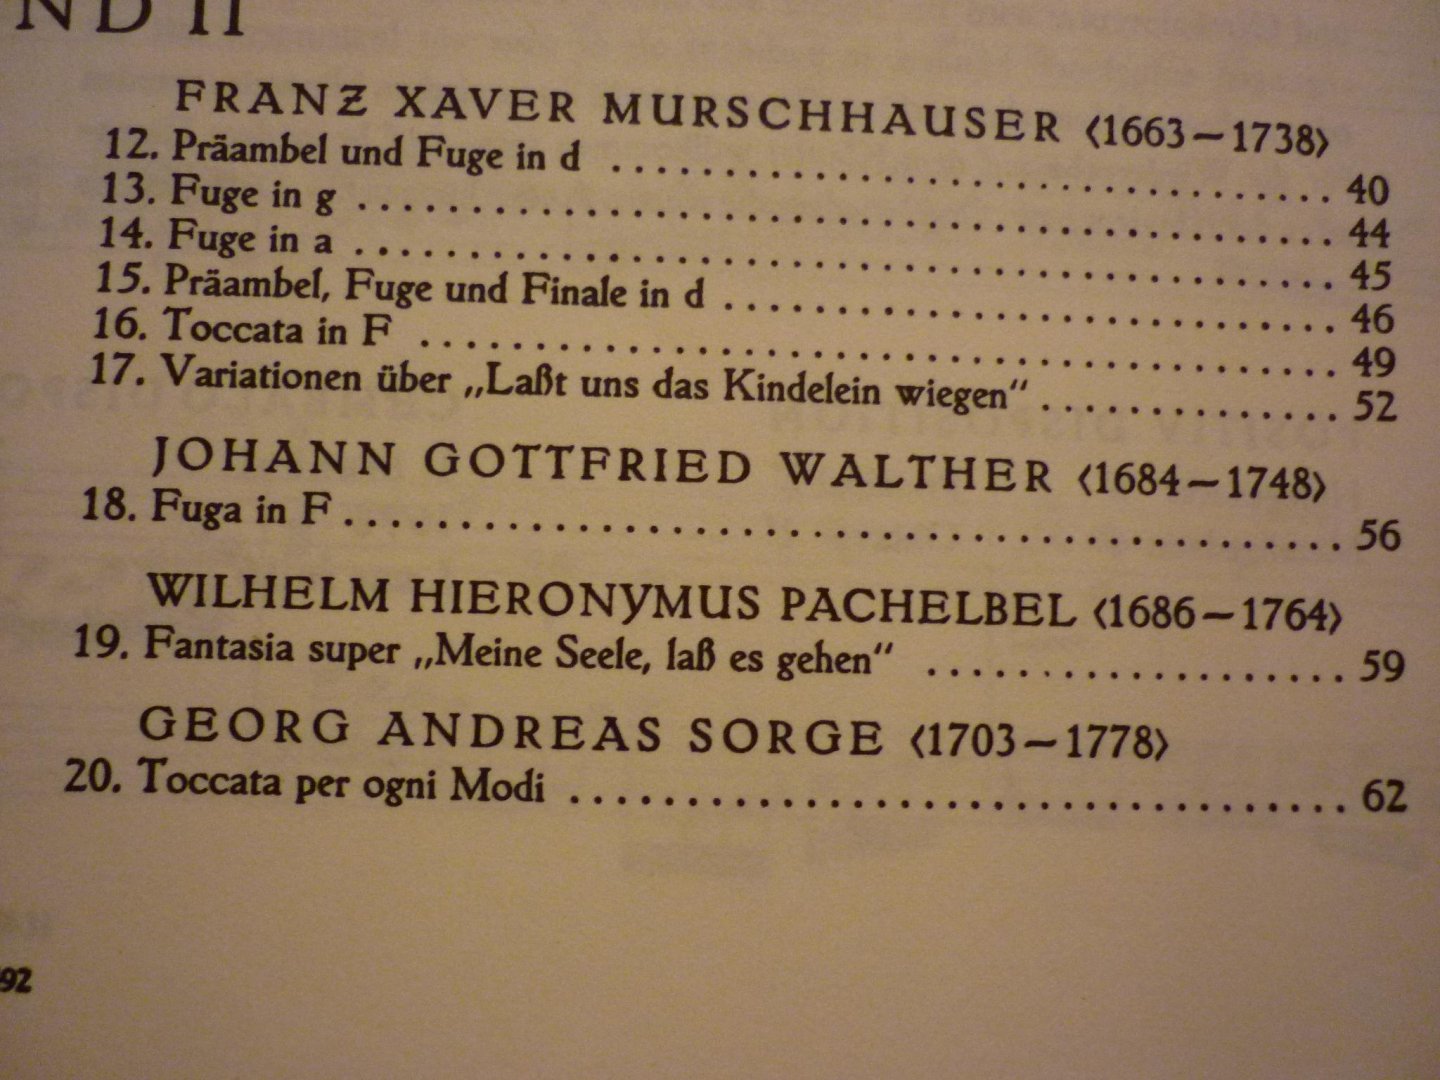 Diverse componisten - Spielbuch fur Kleinorgel; Alte Meister - Band II (Wolggang Auler); 17./18. Jahrhundert